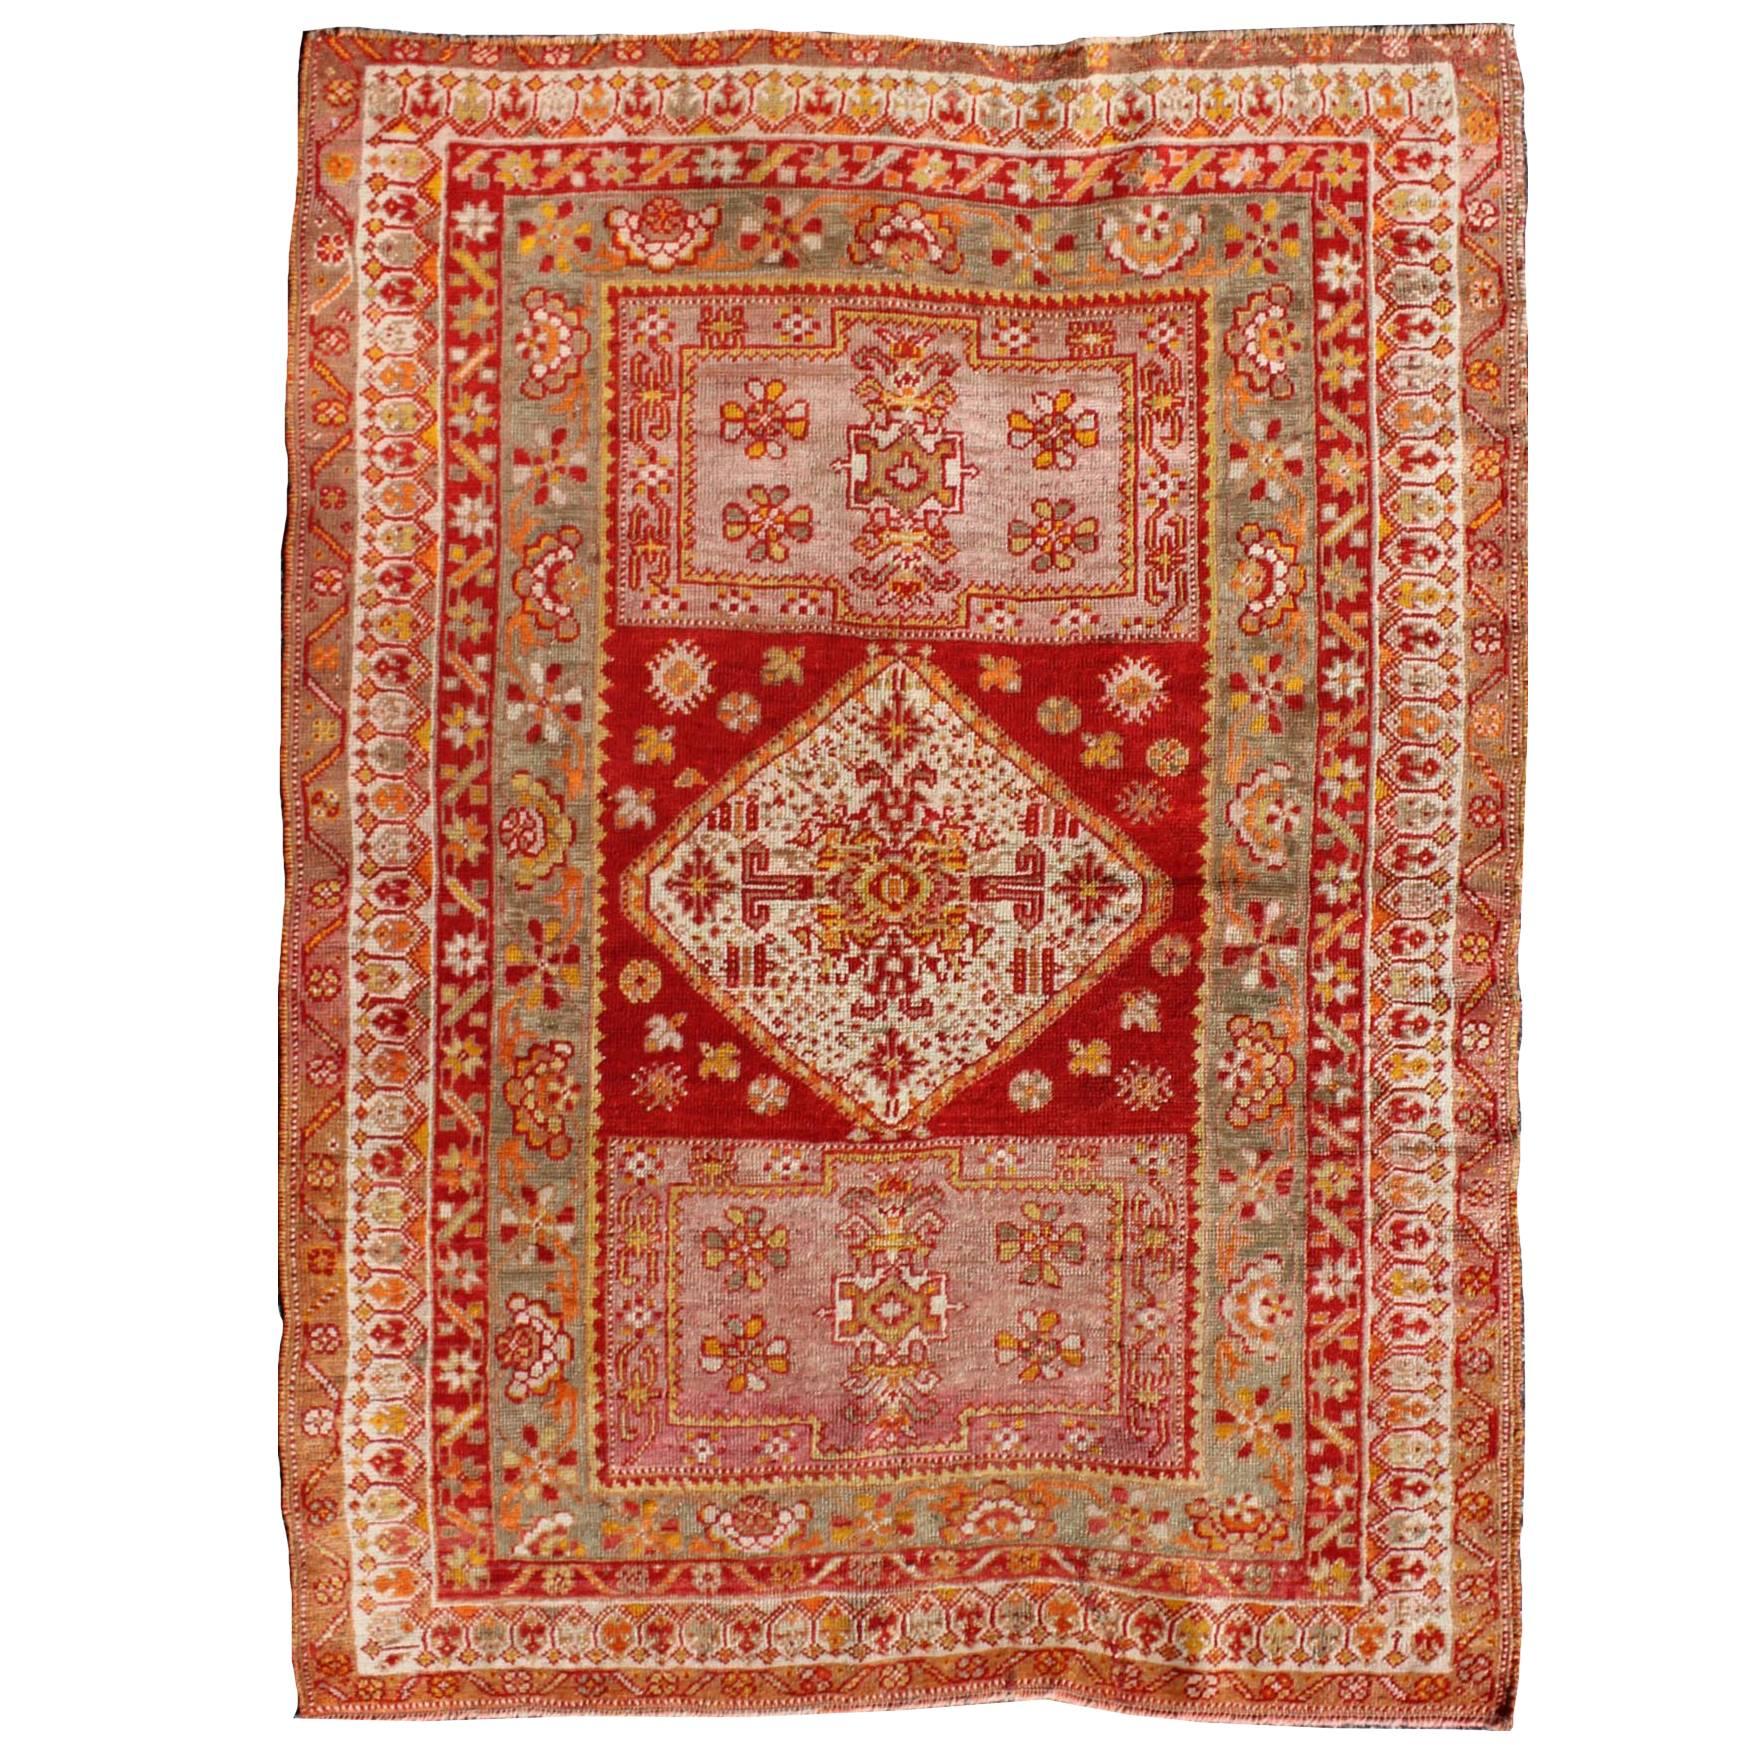 Antiker türkischer Oushak-Teppich mit bunten, schwebenden Blumen- und geometrischen Motiven